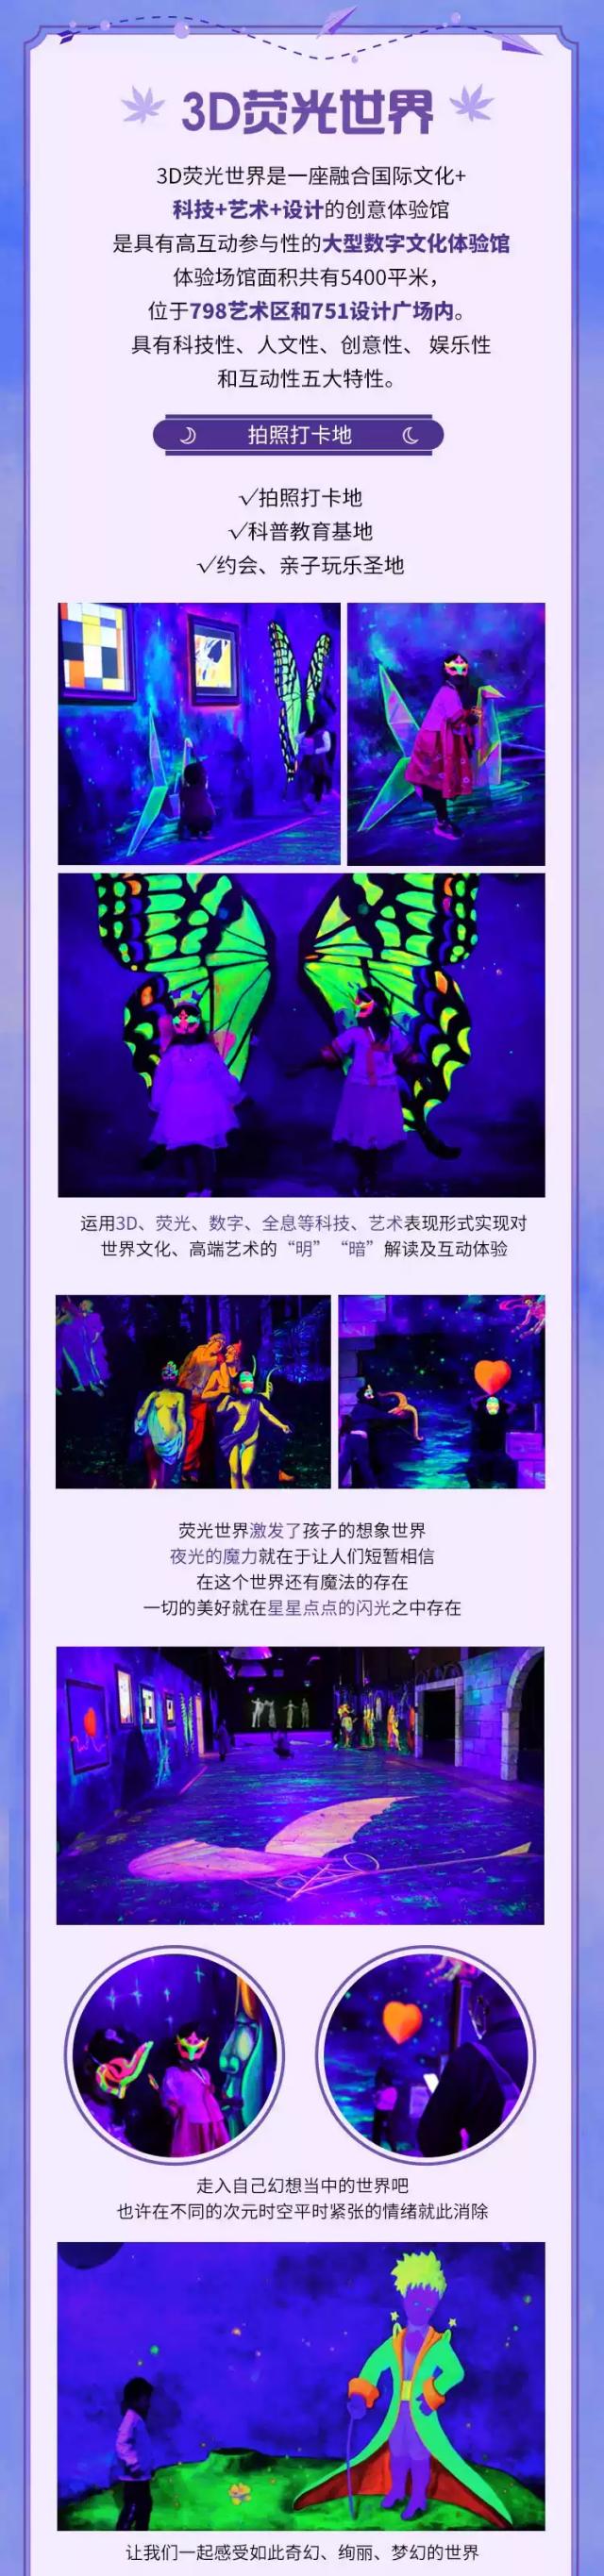 北京科技遇见艺术沉浸式亲子乐园门票